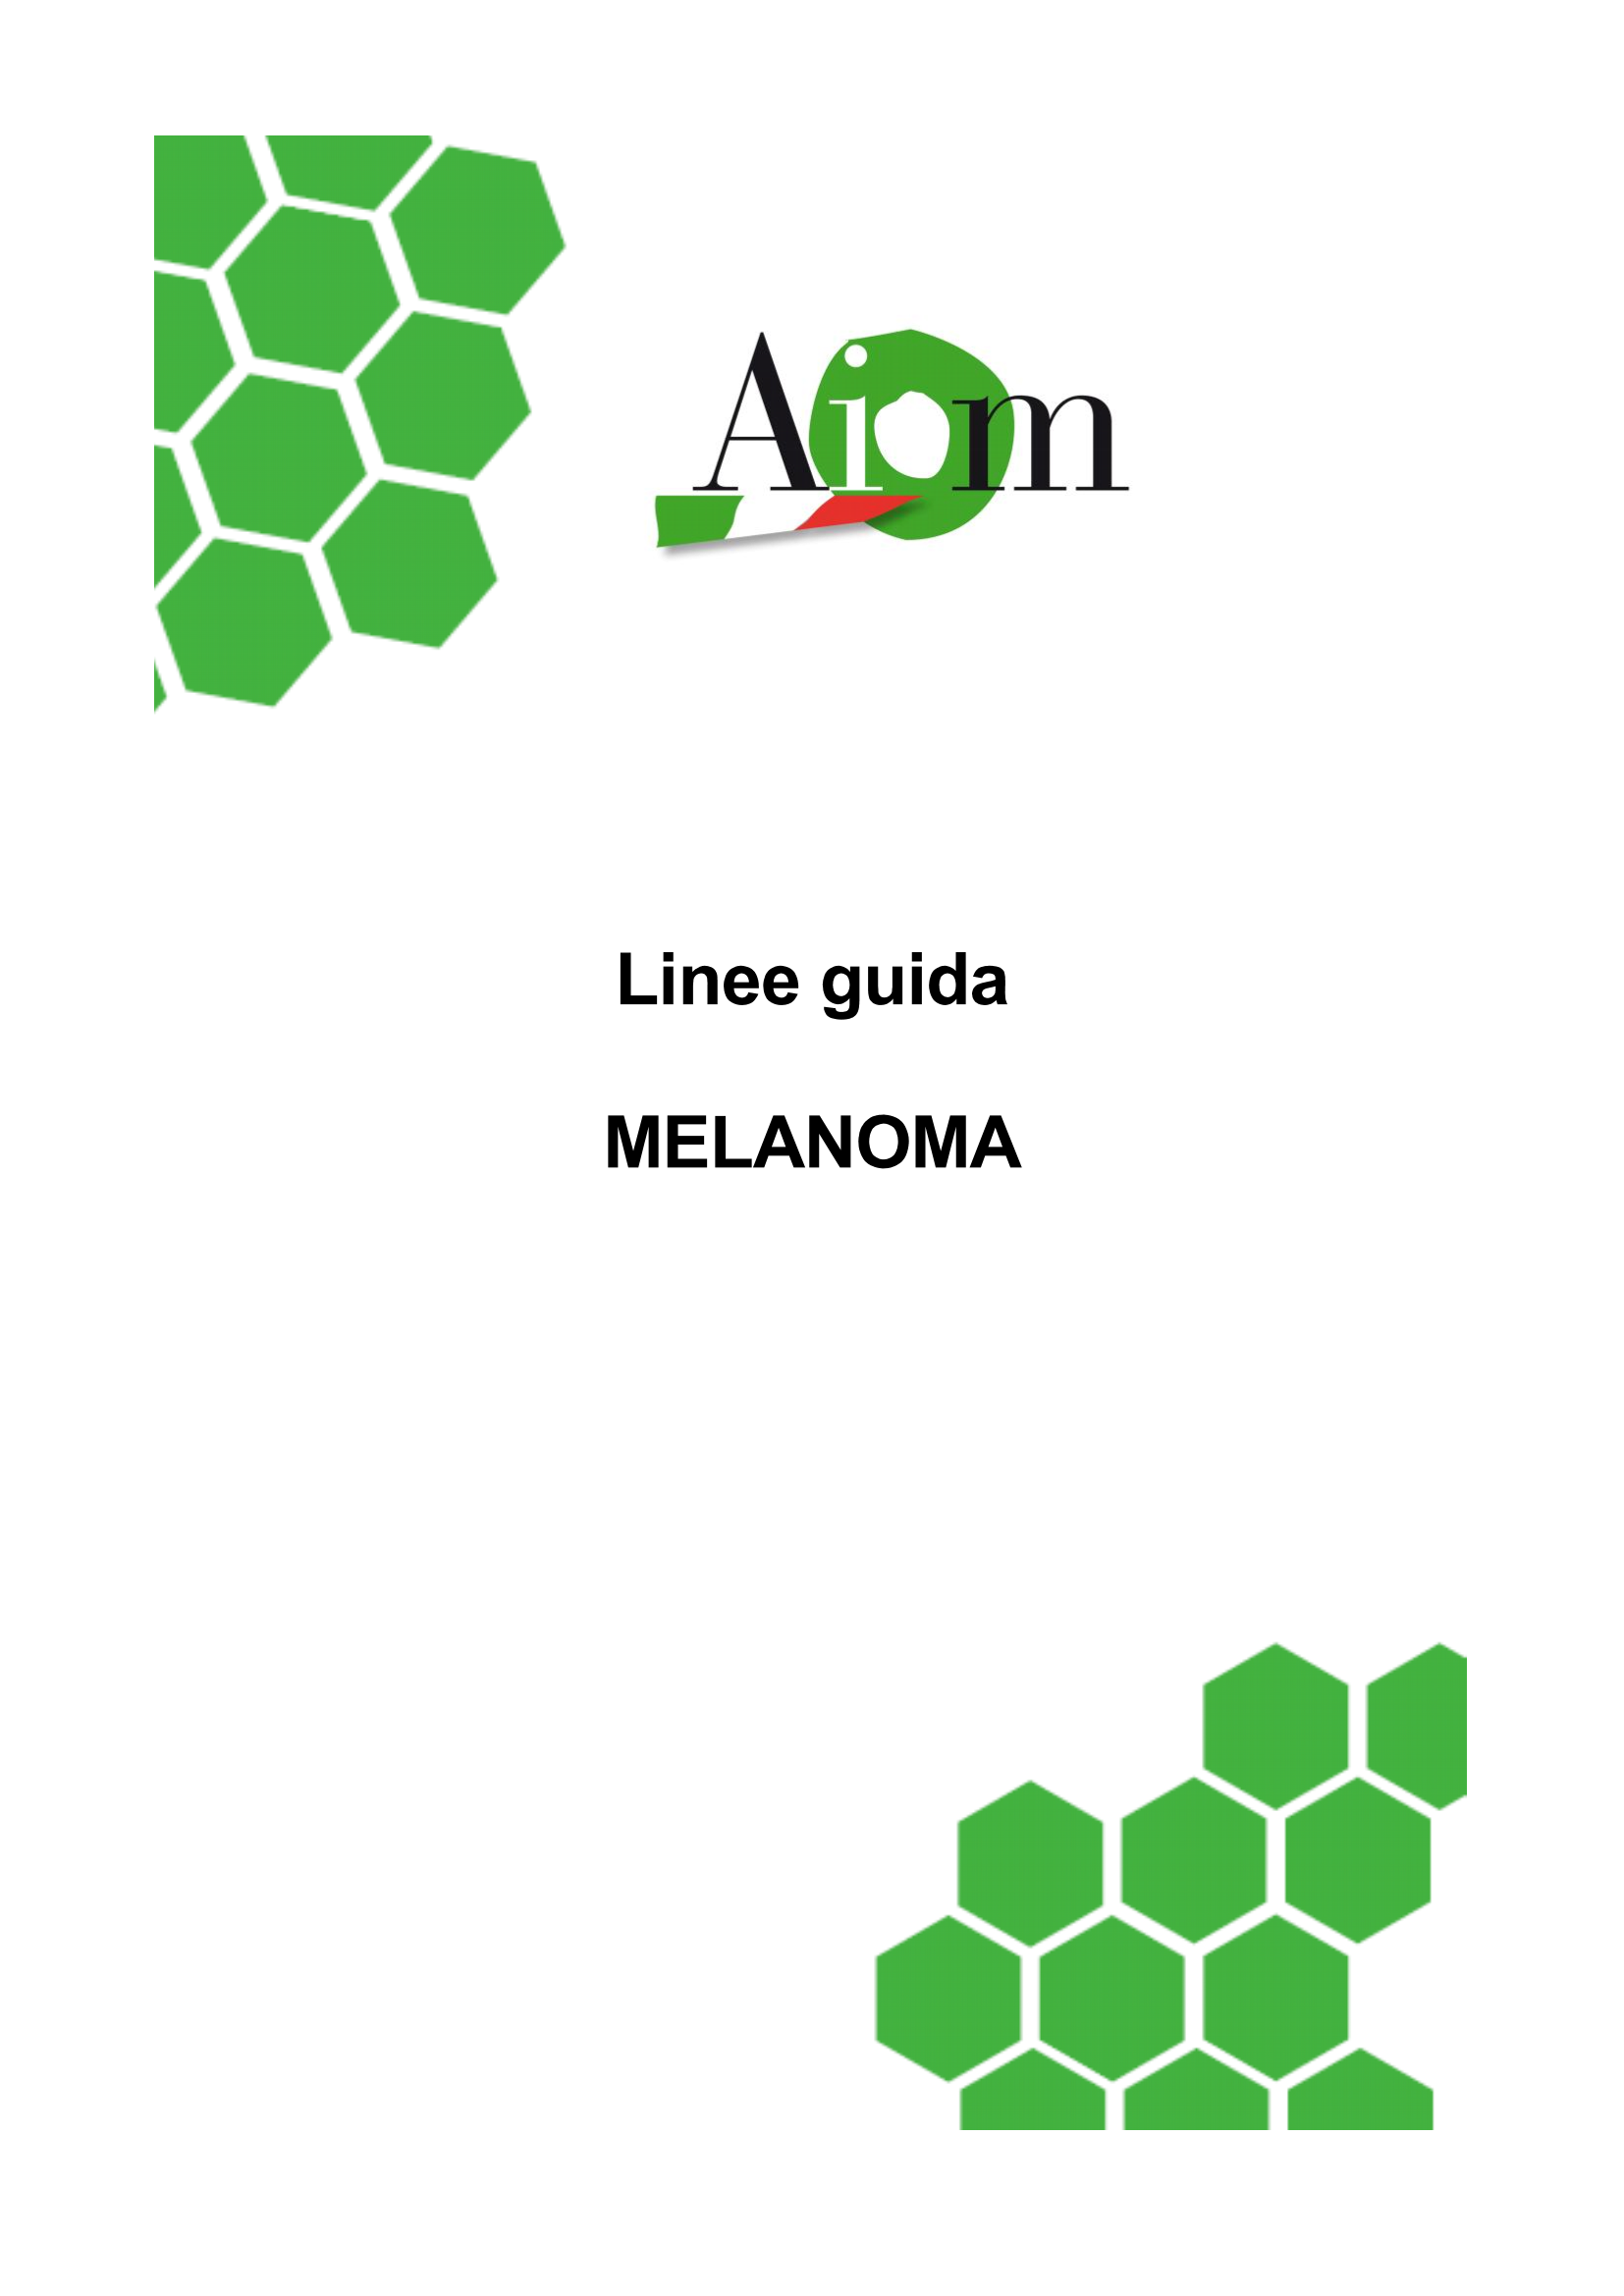 2012 LG AIOM Melanoma Page 1